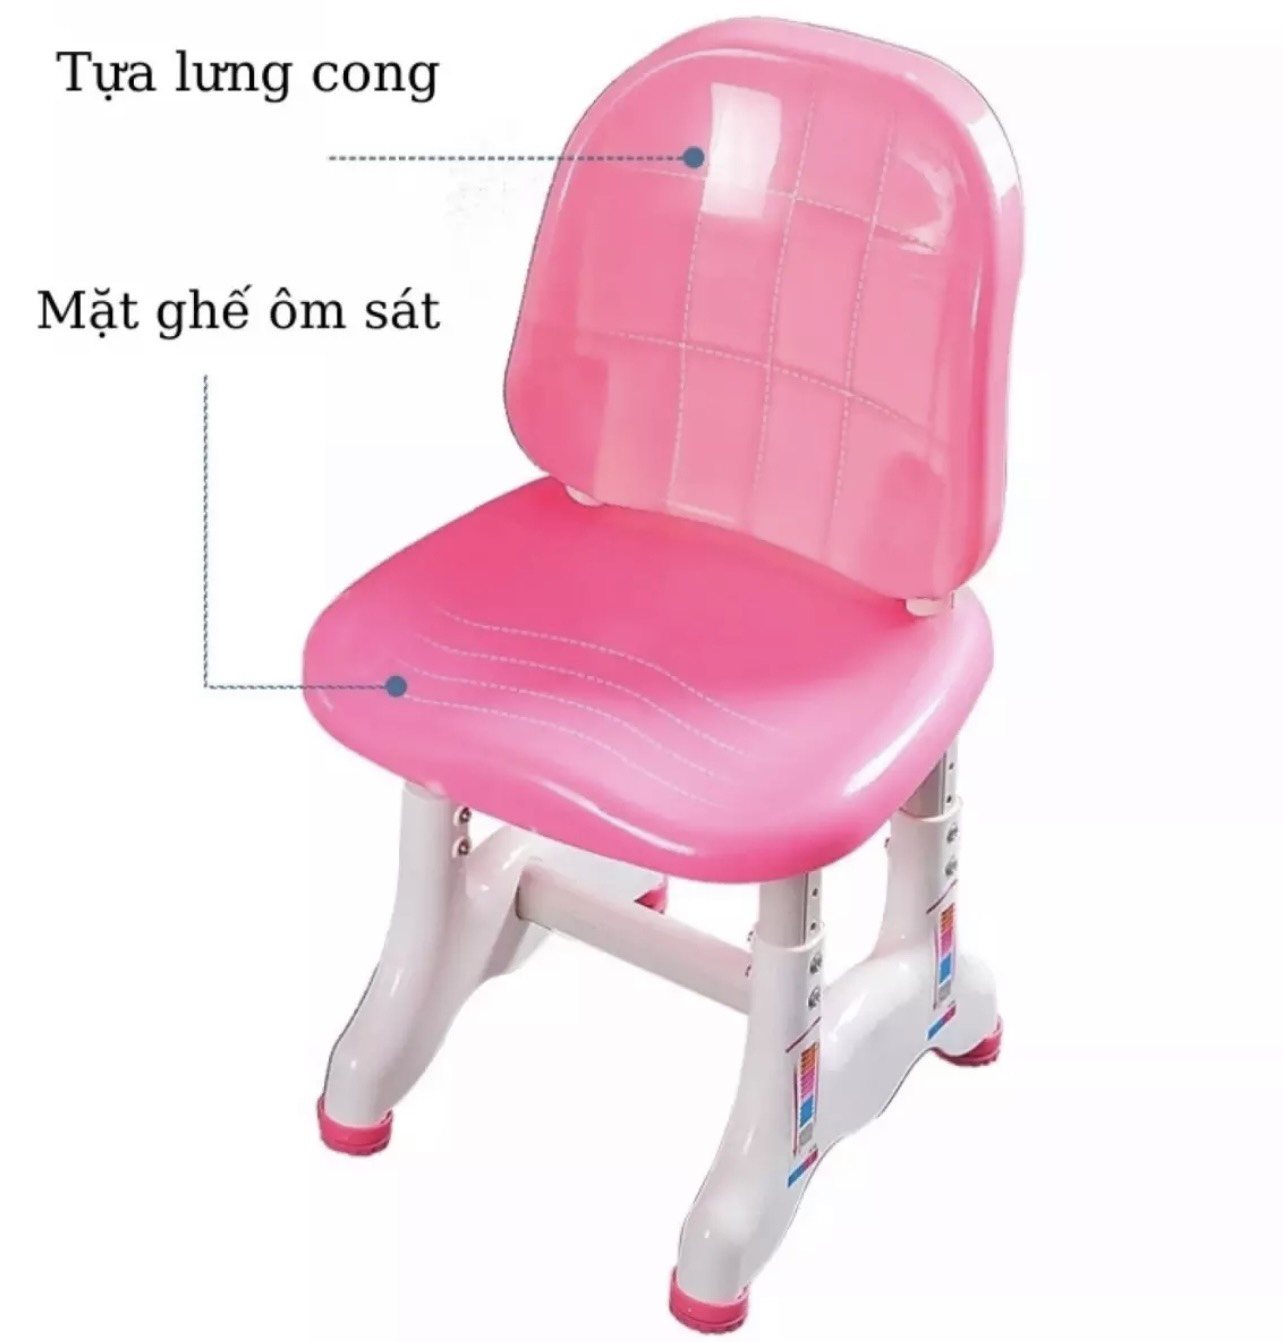 Bộ bàn ghế học sinh chống cận chống gù bàn thông minh có điều chỉnh chiều cao góc nghiêng có giá sách ngăn kéo B05